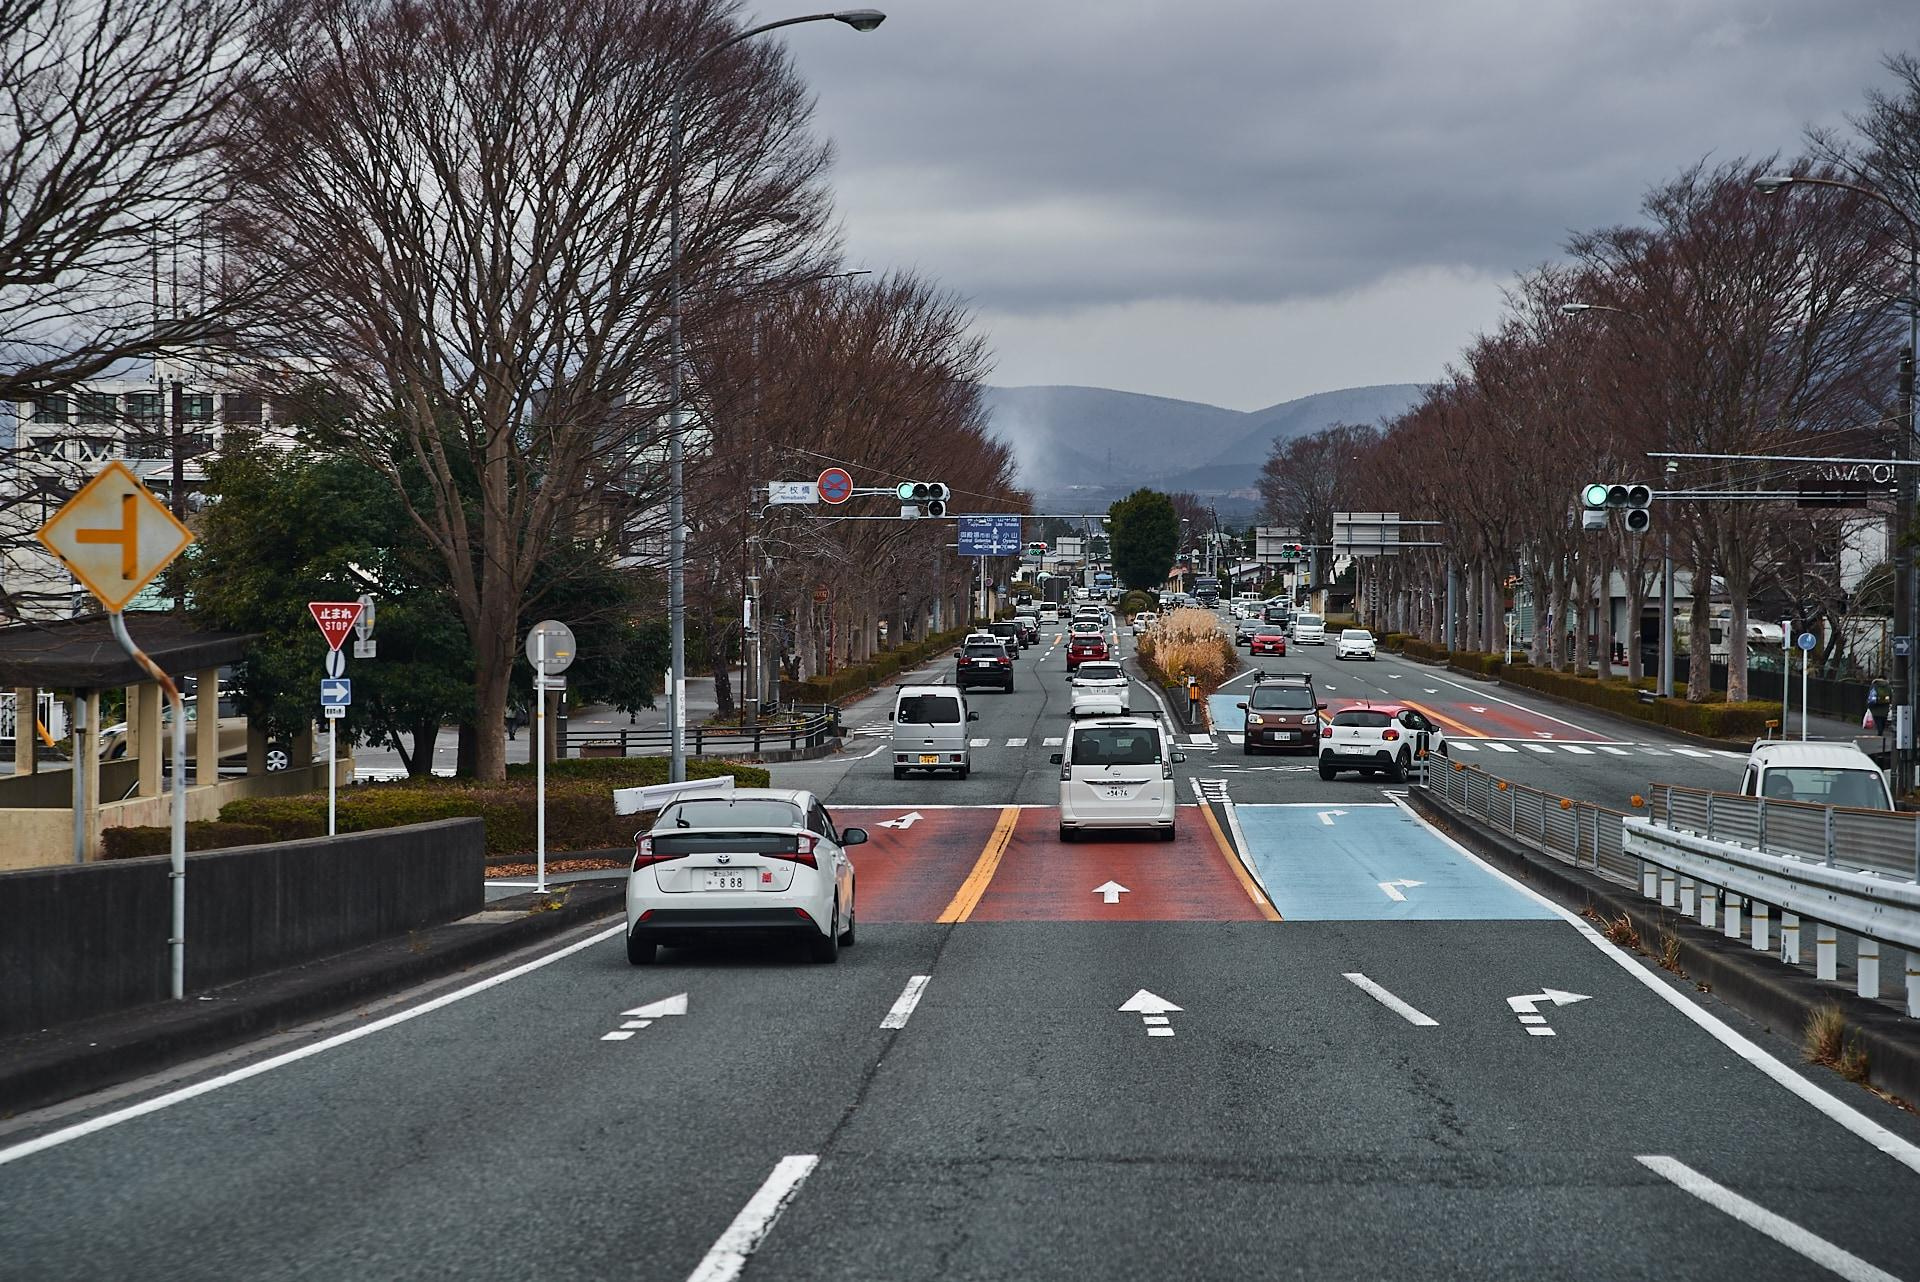 Хоть ехать приходится по неправильной стороне, японские дороги очень хорошо организованы и никаких проблем даже с большим трафиком не возникает